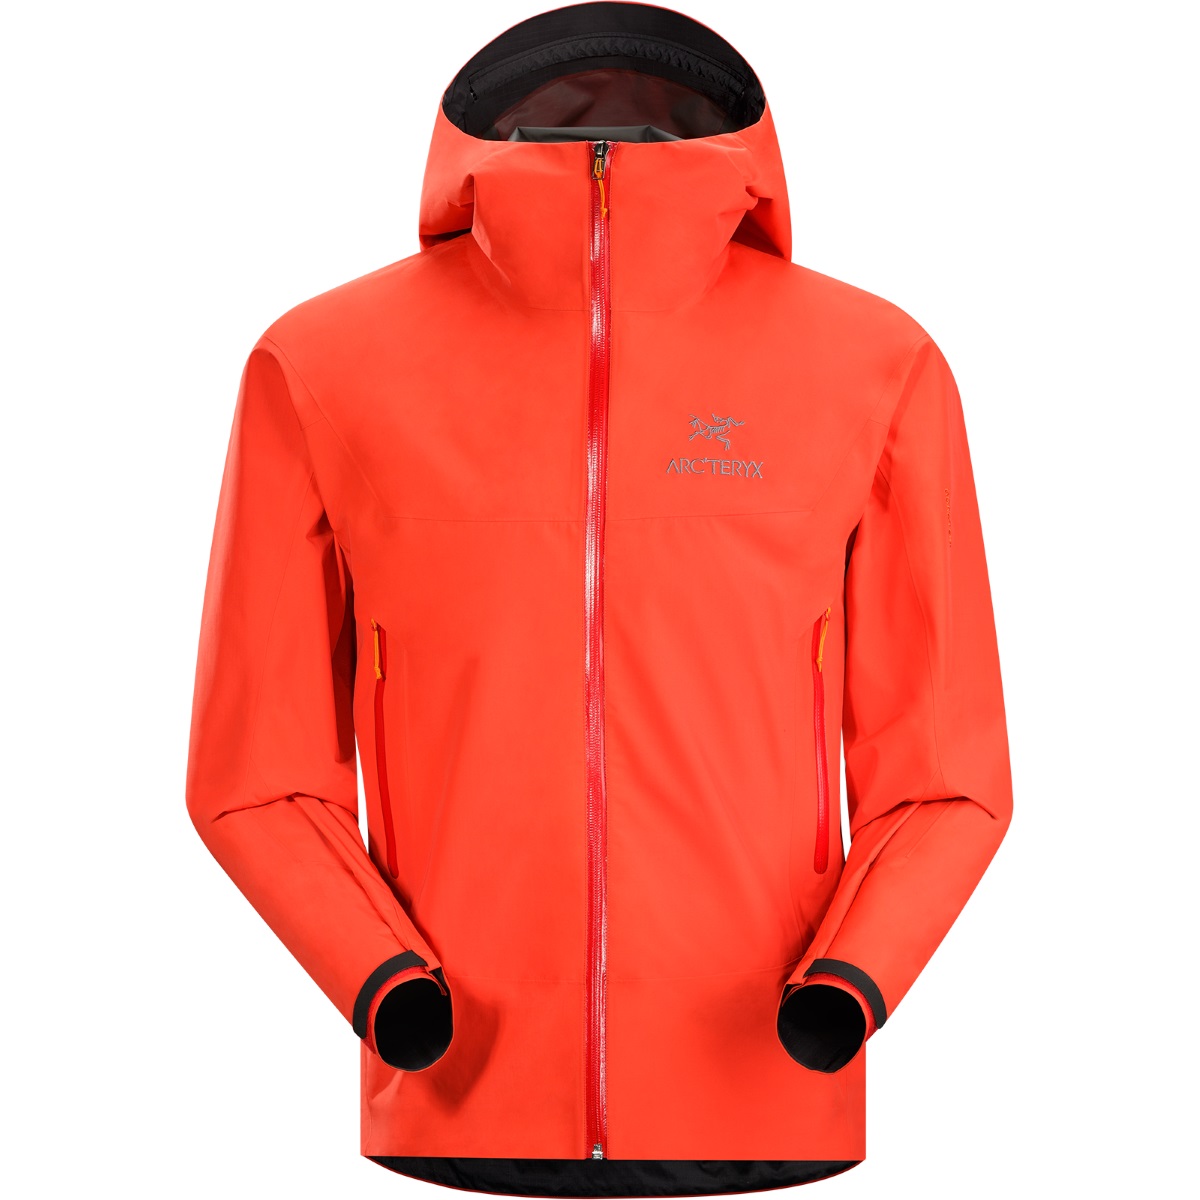 Beta SL Jacket, men's, discontinued Fall 2015 colors